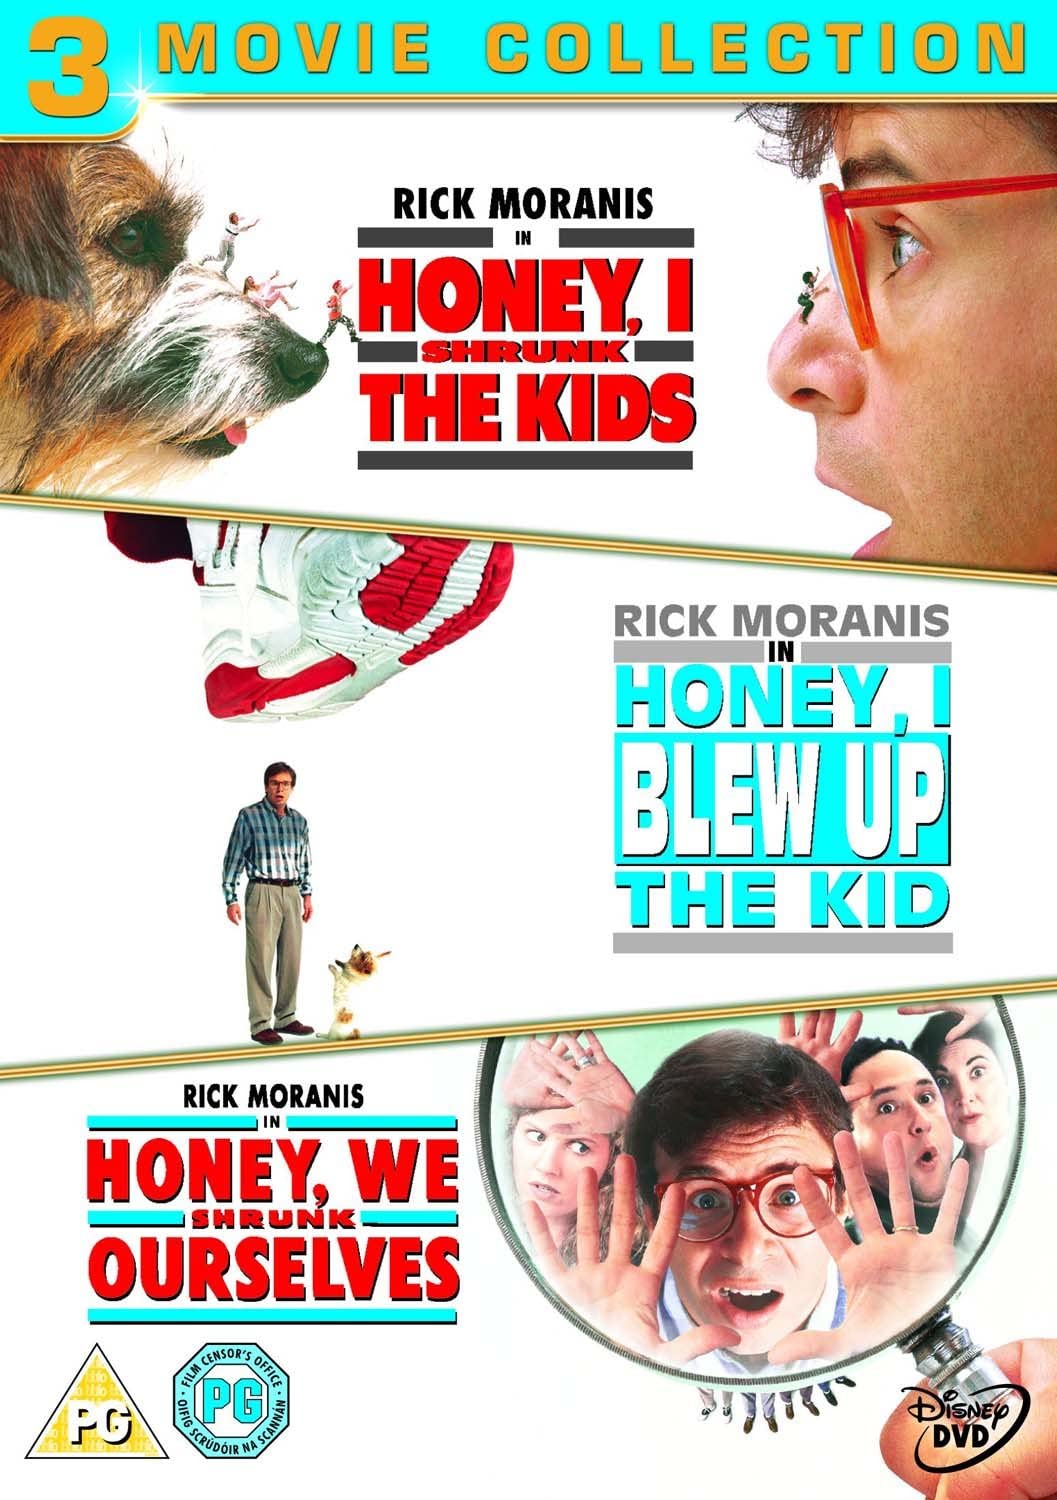 Honey, I Shrunk The Kids / Honey, I Blew Up The Kid / Honey, We Shrunk Ourselves - Family/Comedy [DVD]